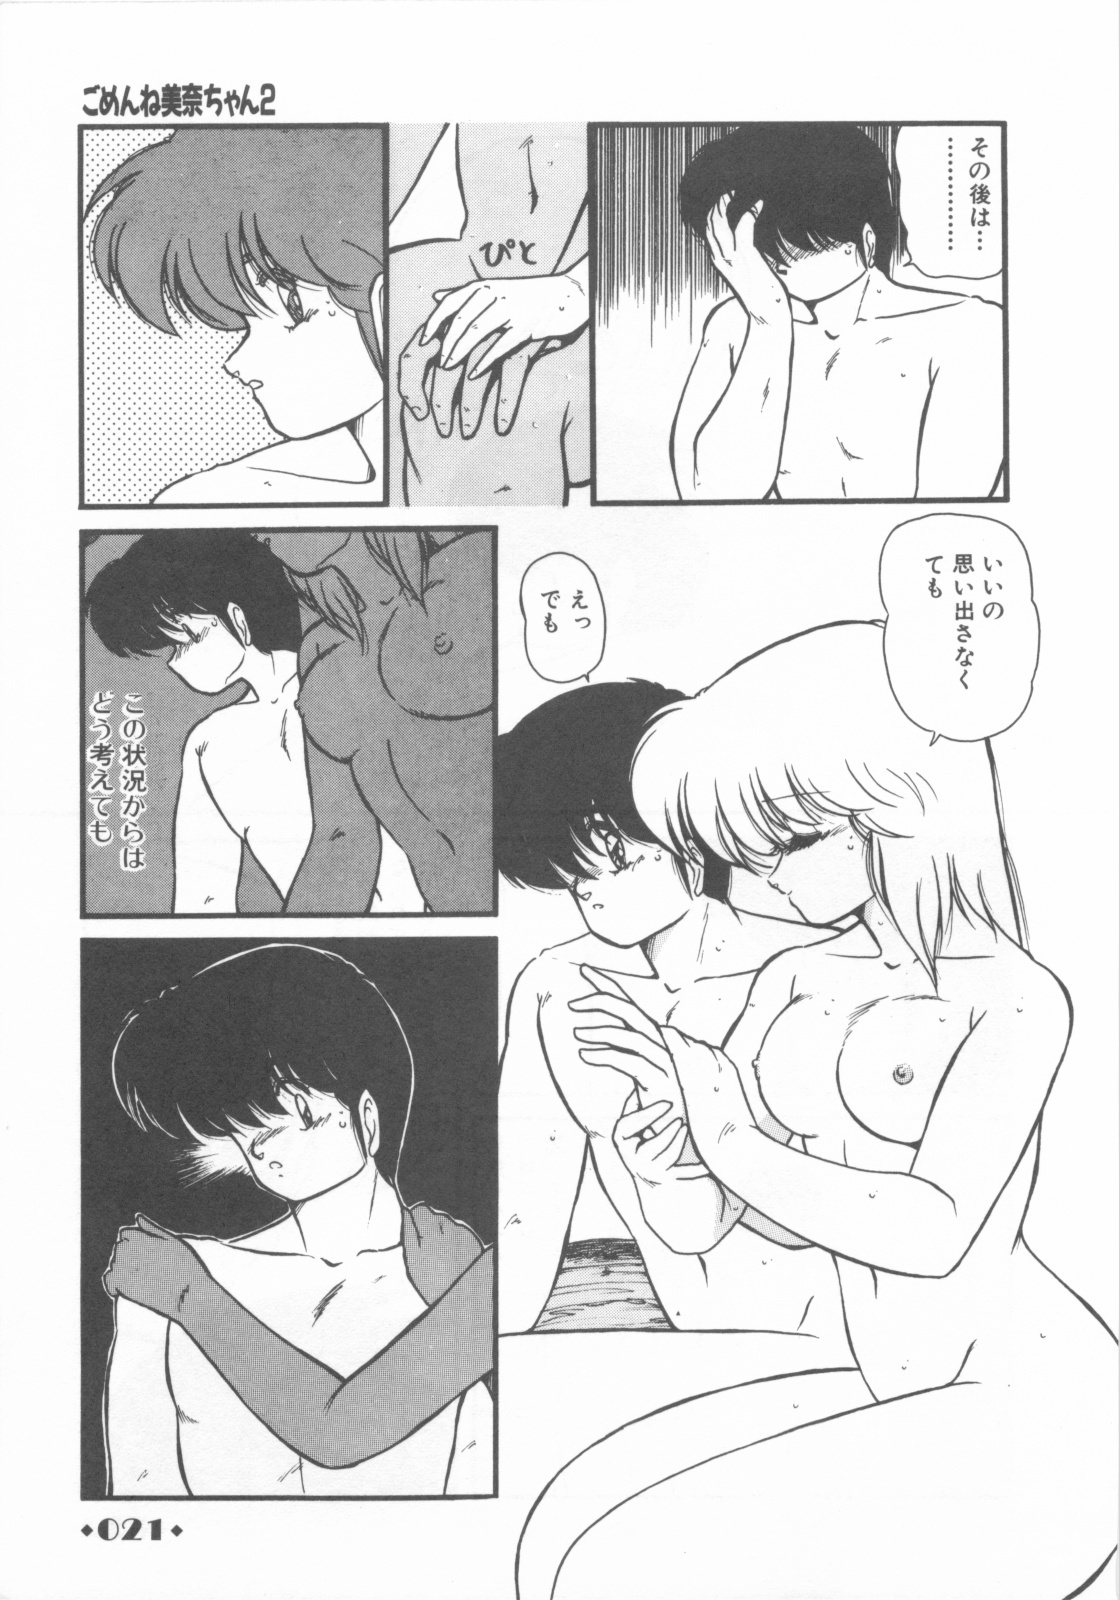 [Makuwa] Gomenne Mina-chan 1 page 23 full